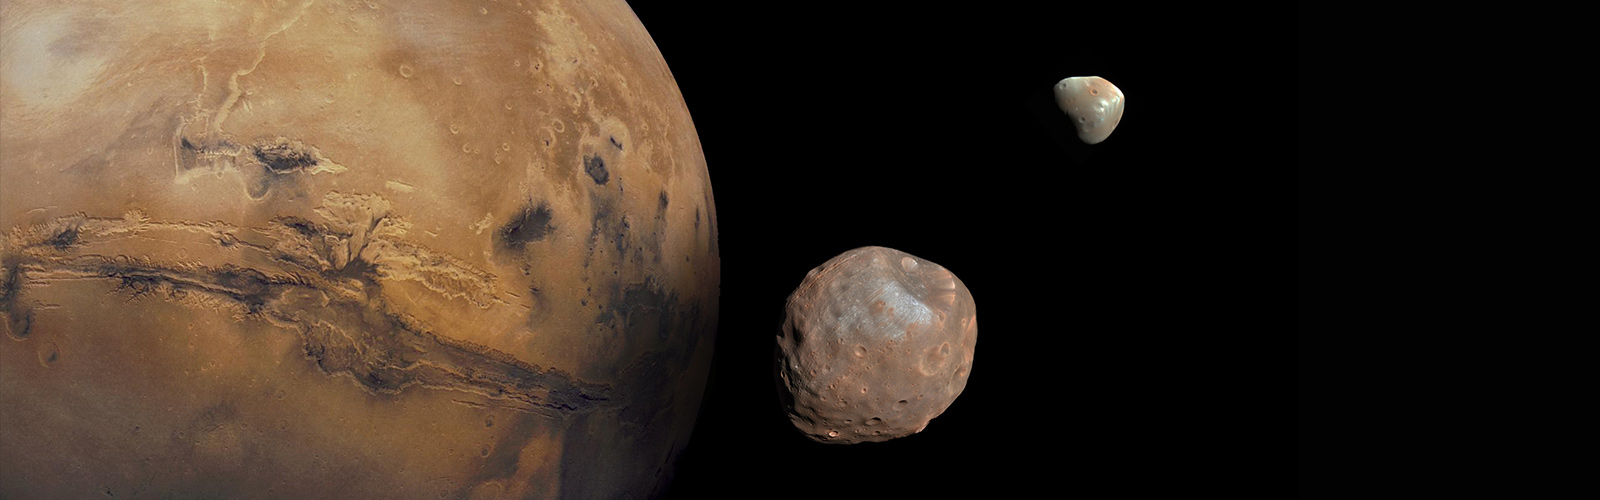 In Depth Mars Moons Nasa Solar System Exploration